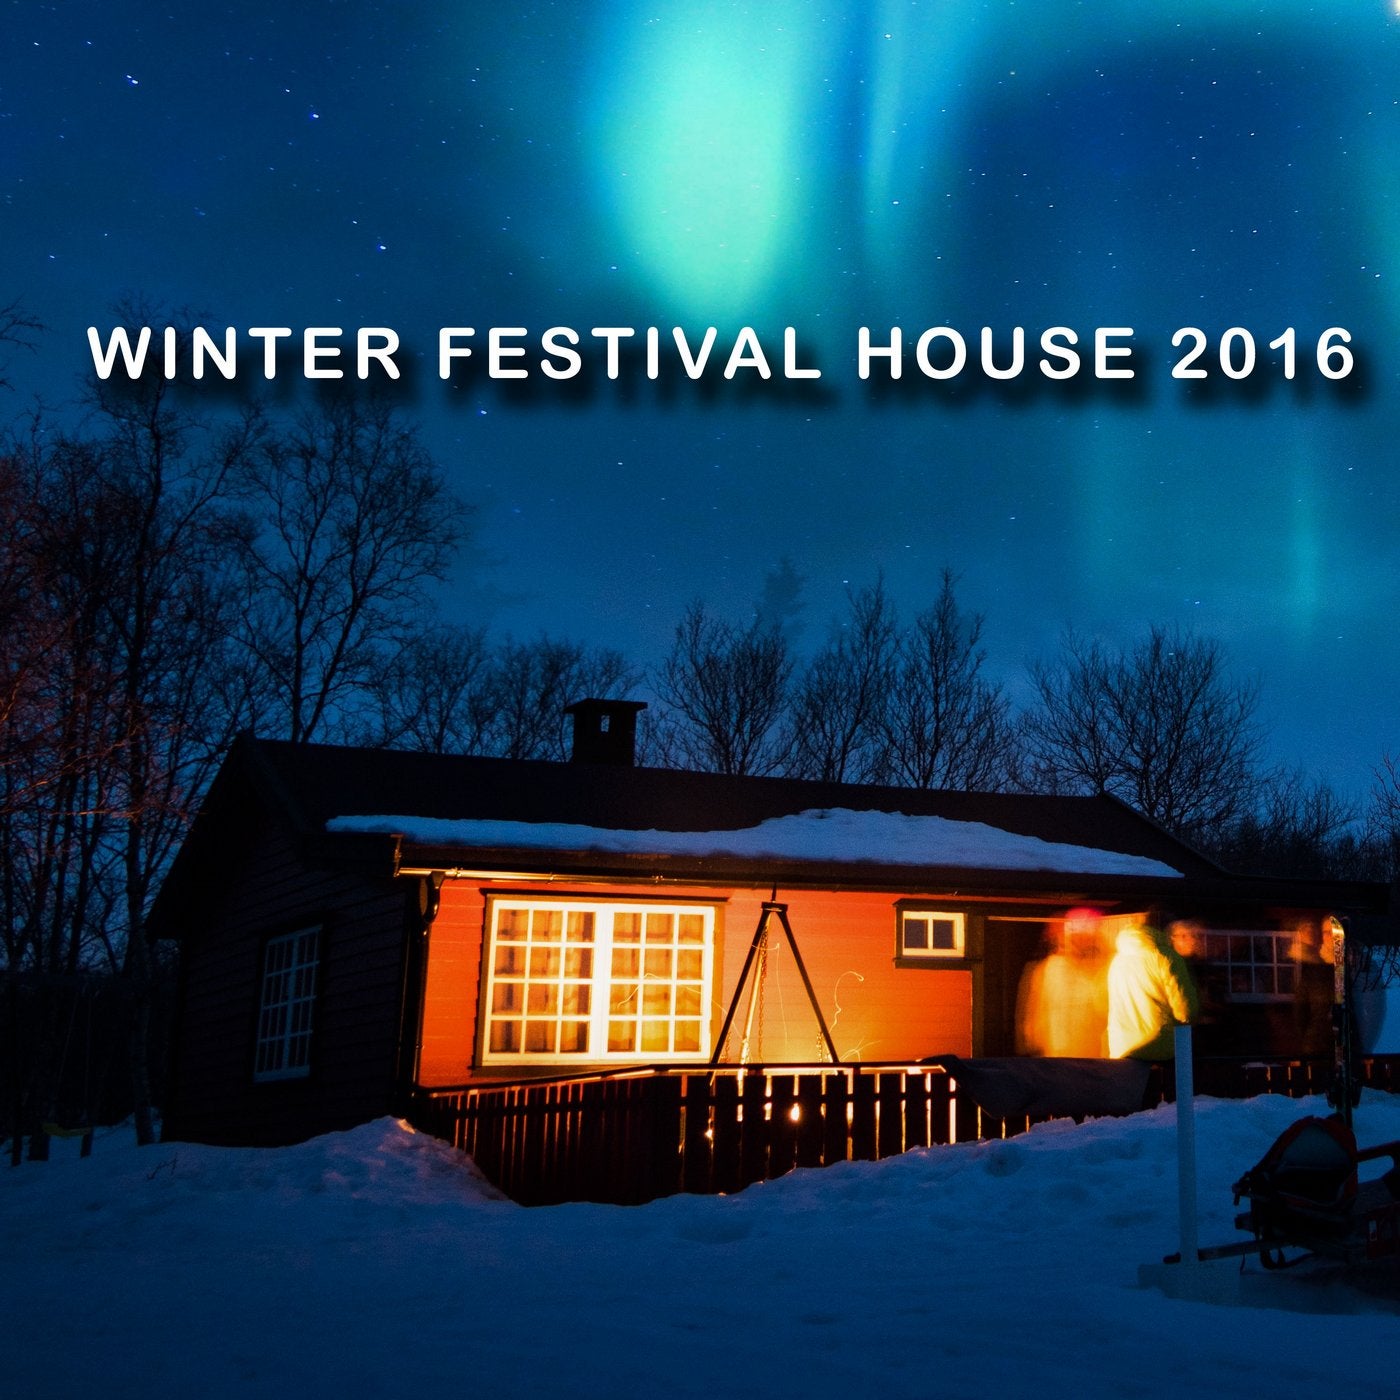 Winter Festival House 2016